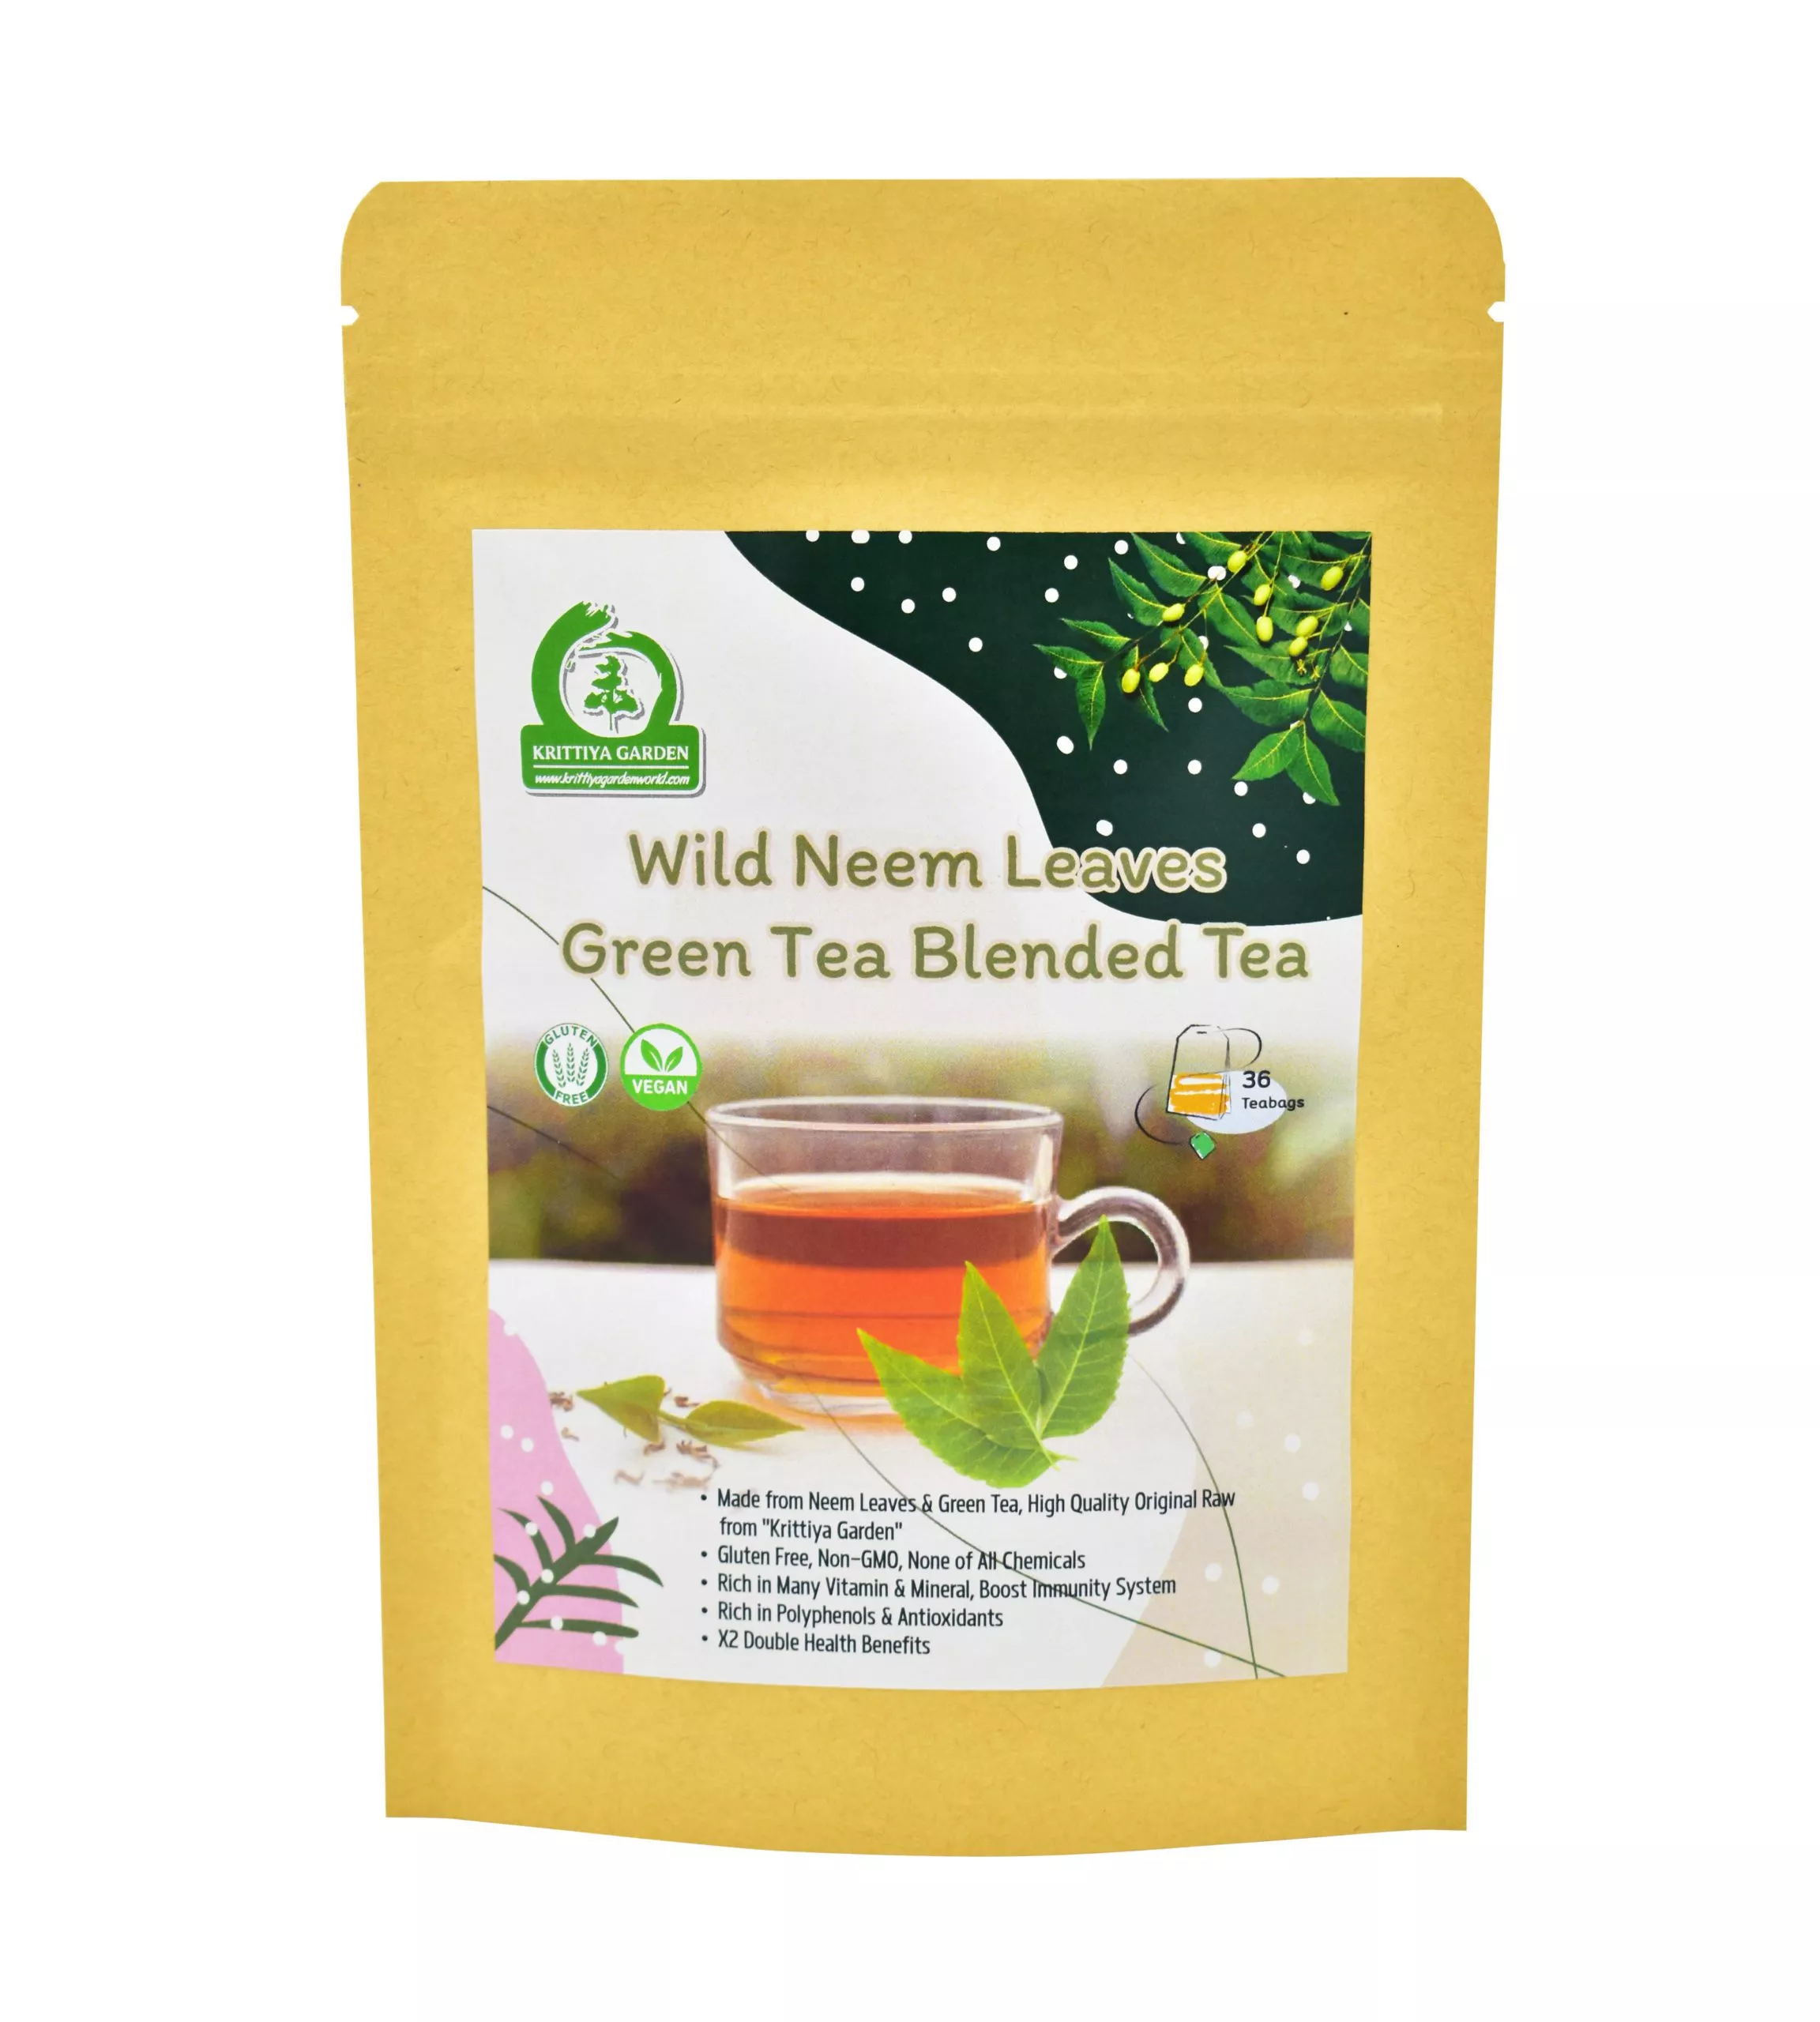 Wild Neem Leaves Green Tea Blended Tea Front